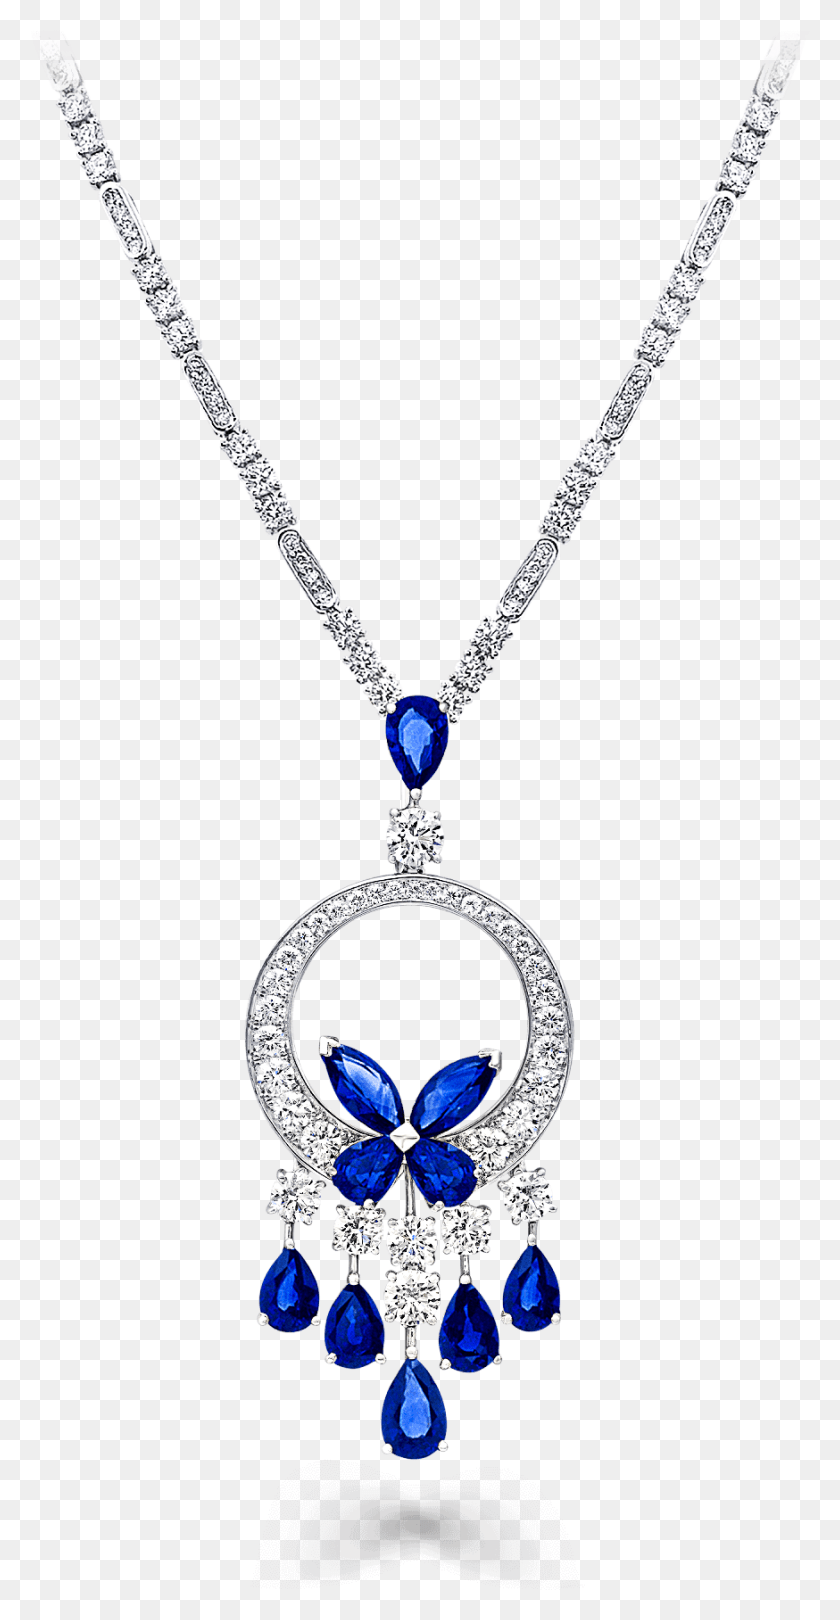 874x1749 Ожерелье С Люстрой Graff Classic Butterfly С Изображением Бабочки Graff Sapphire, Драгоценный Камень, Ювелирные Изделия, Аксессуары Hd Png Скачать